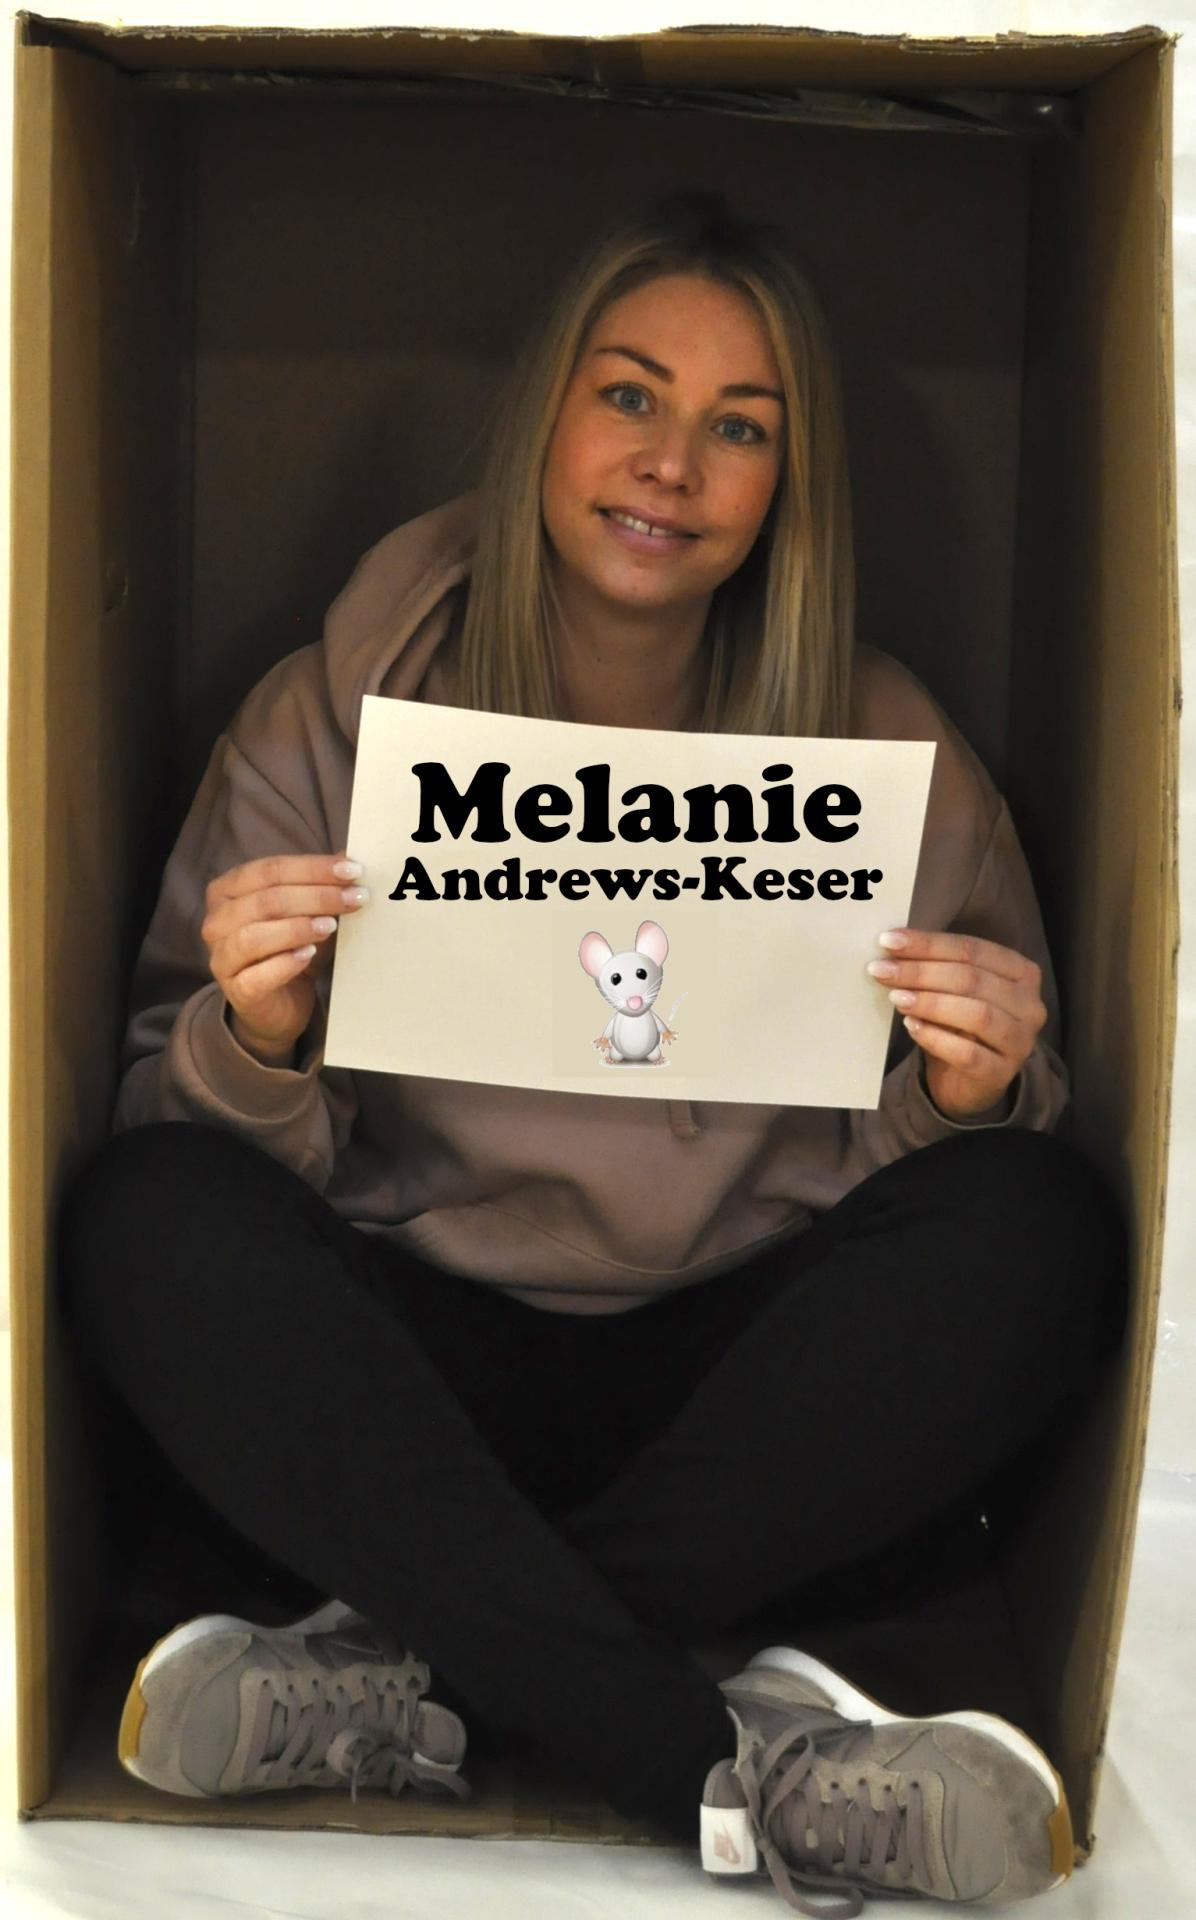 Melanie Andrews-Keser